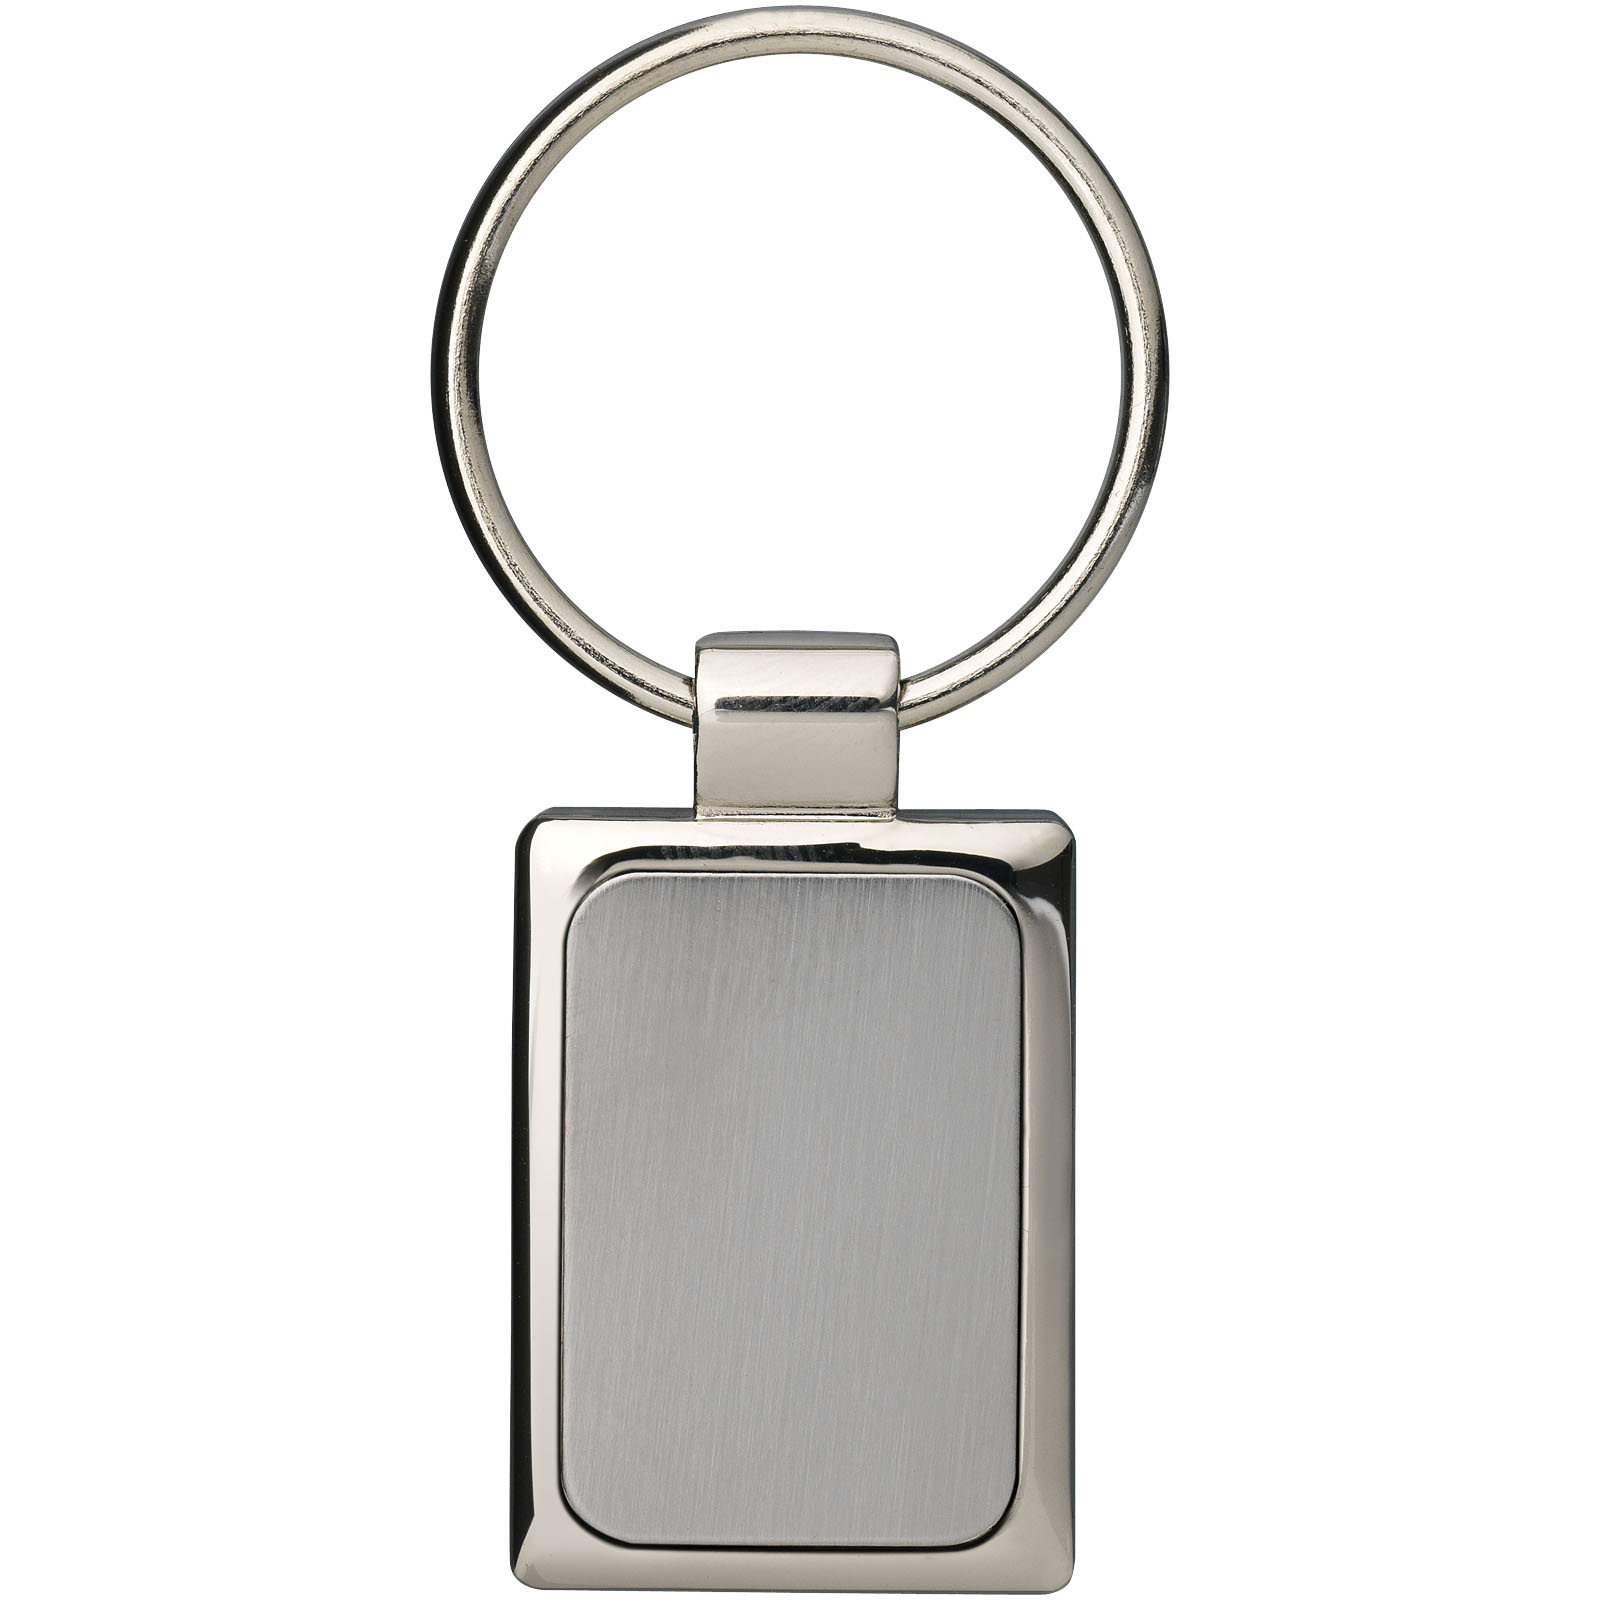 Porte-clés publicitaires - Porte-clés rectangulaire - 2